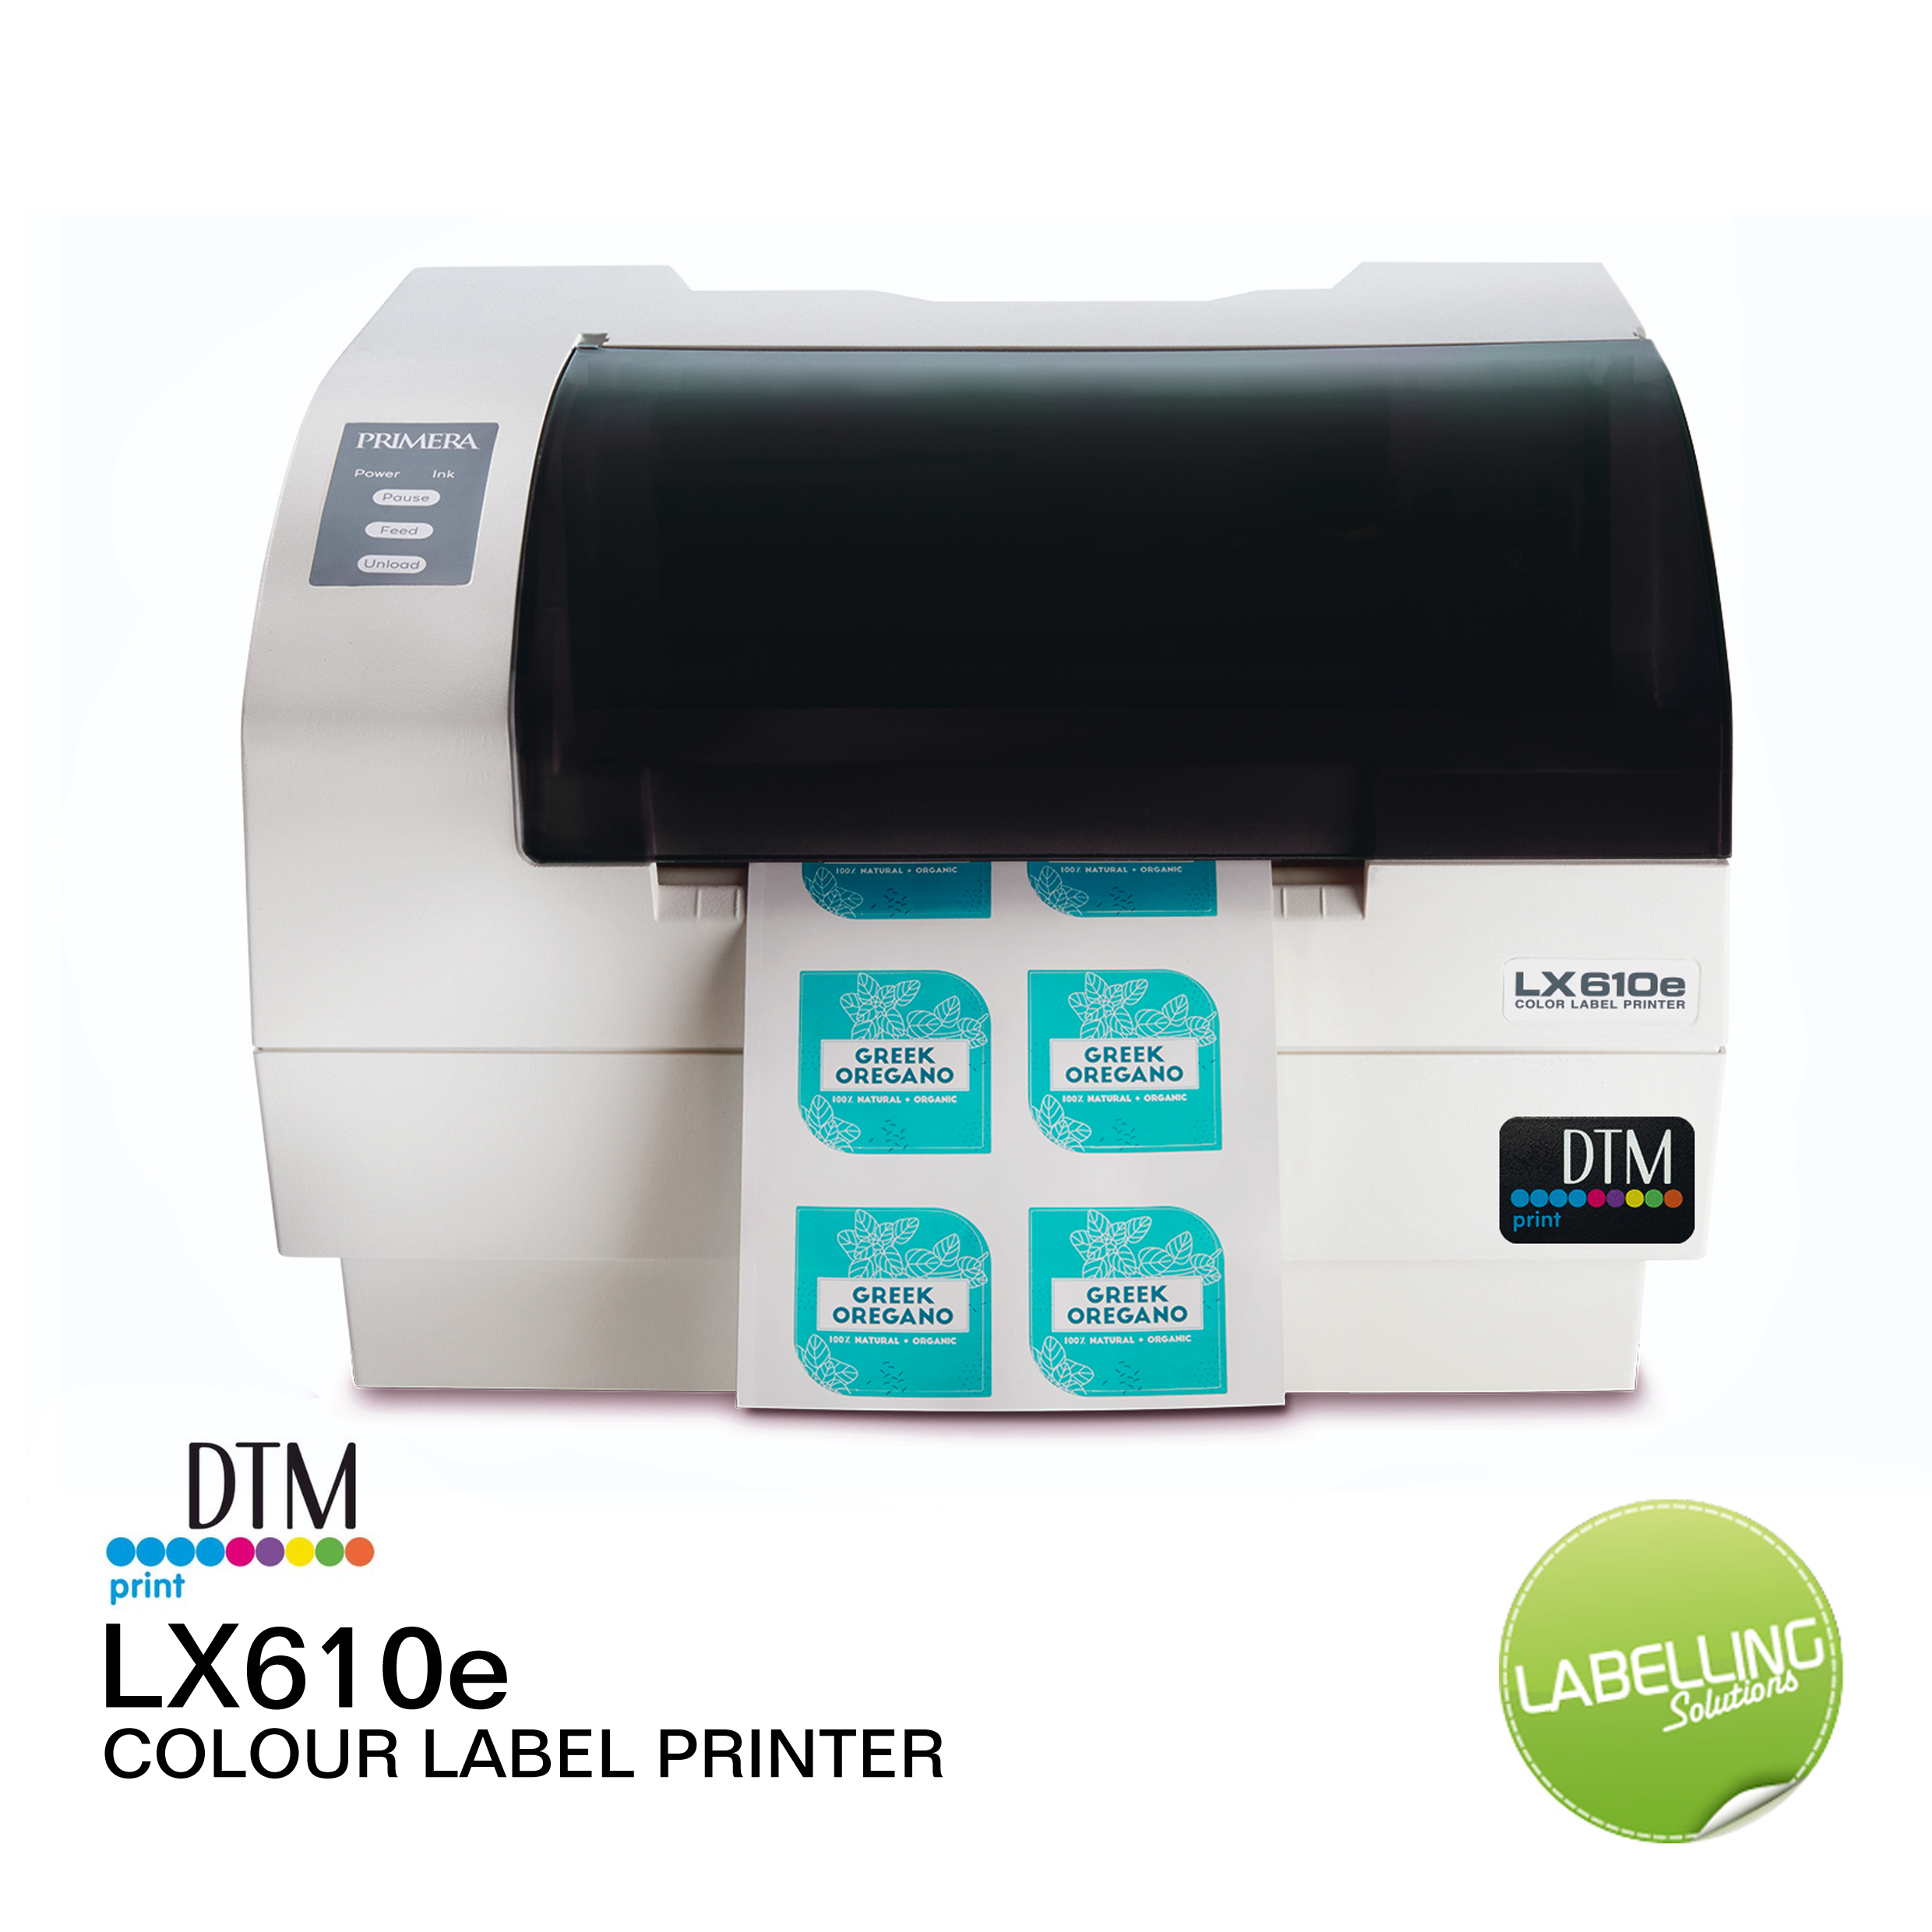 Label printer printing